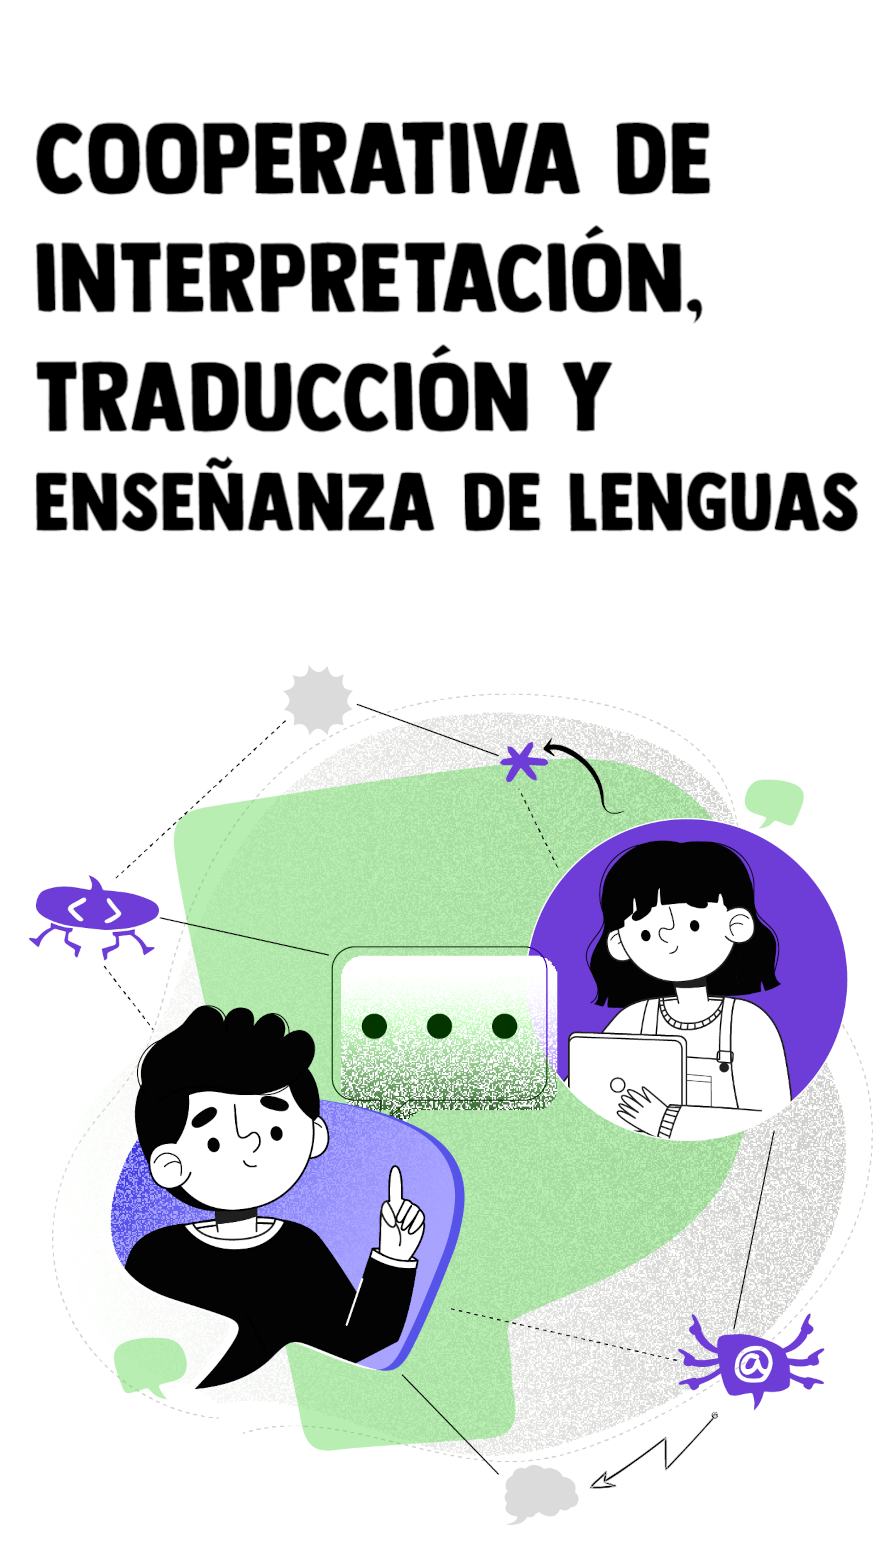 Cooperativa de interpretación, traducción, edición y enseñanza de lenguas